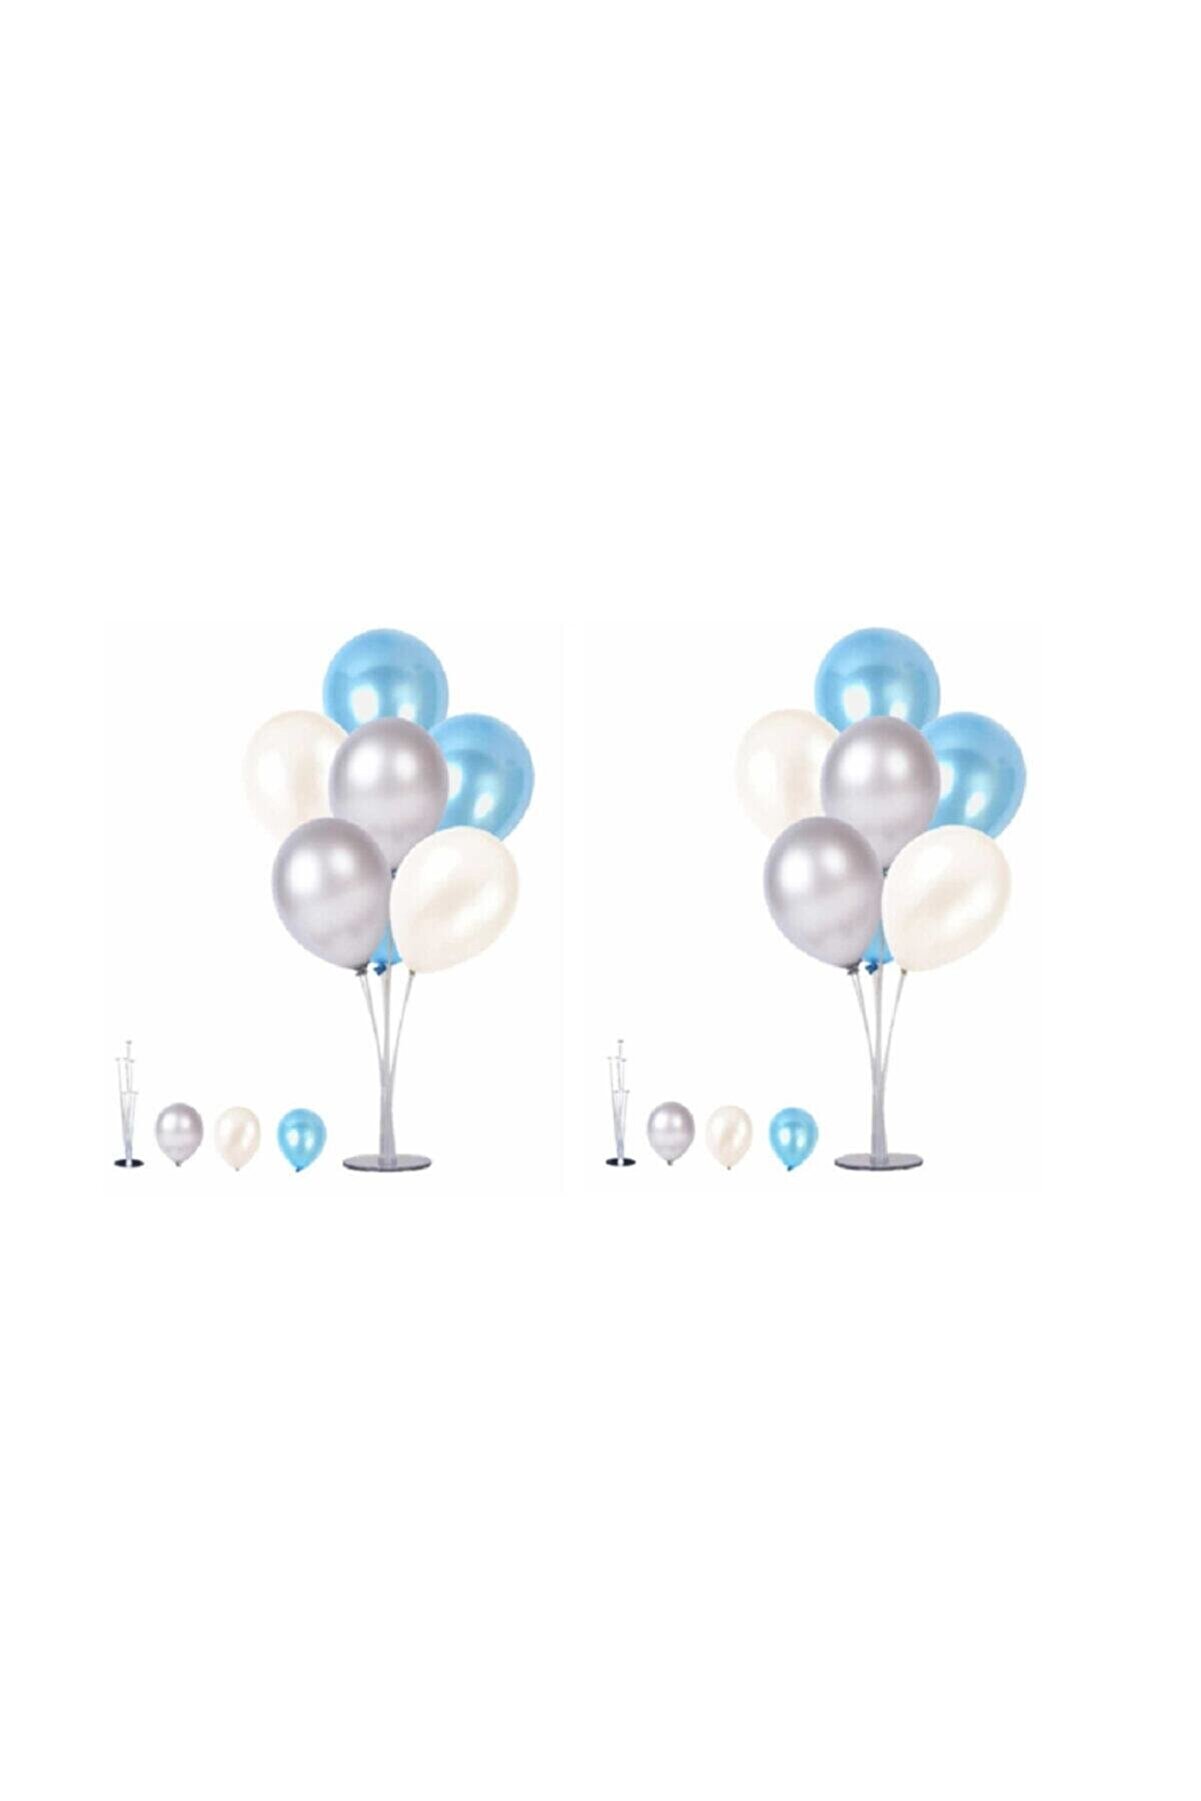 TATLI GÜNLER 2 Adet 7'li Balon Standı Ve 14 Adet Gümüş -mavi - Beyaz Metalik Balon Set